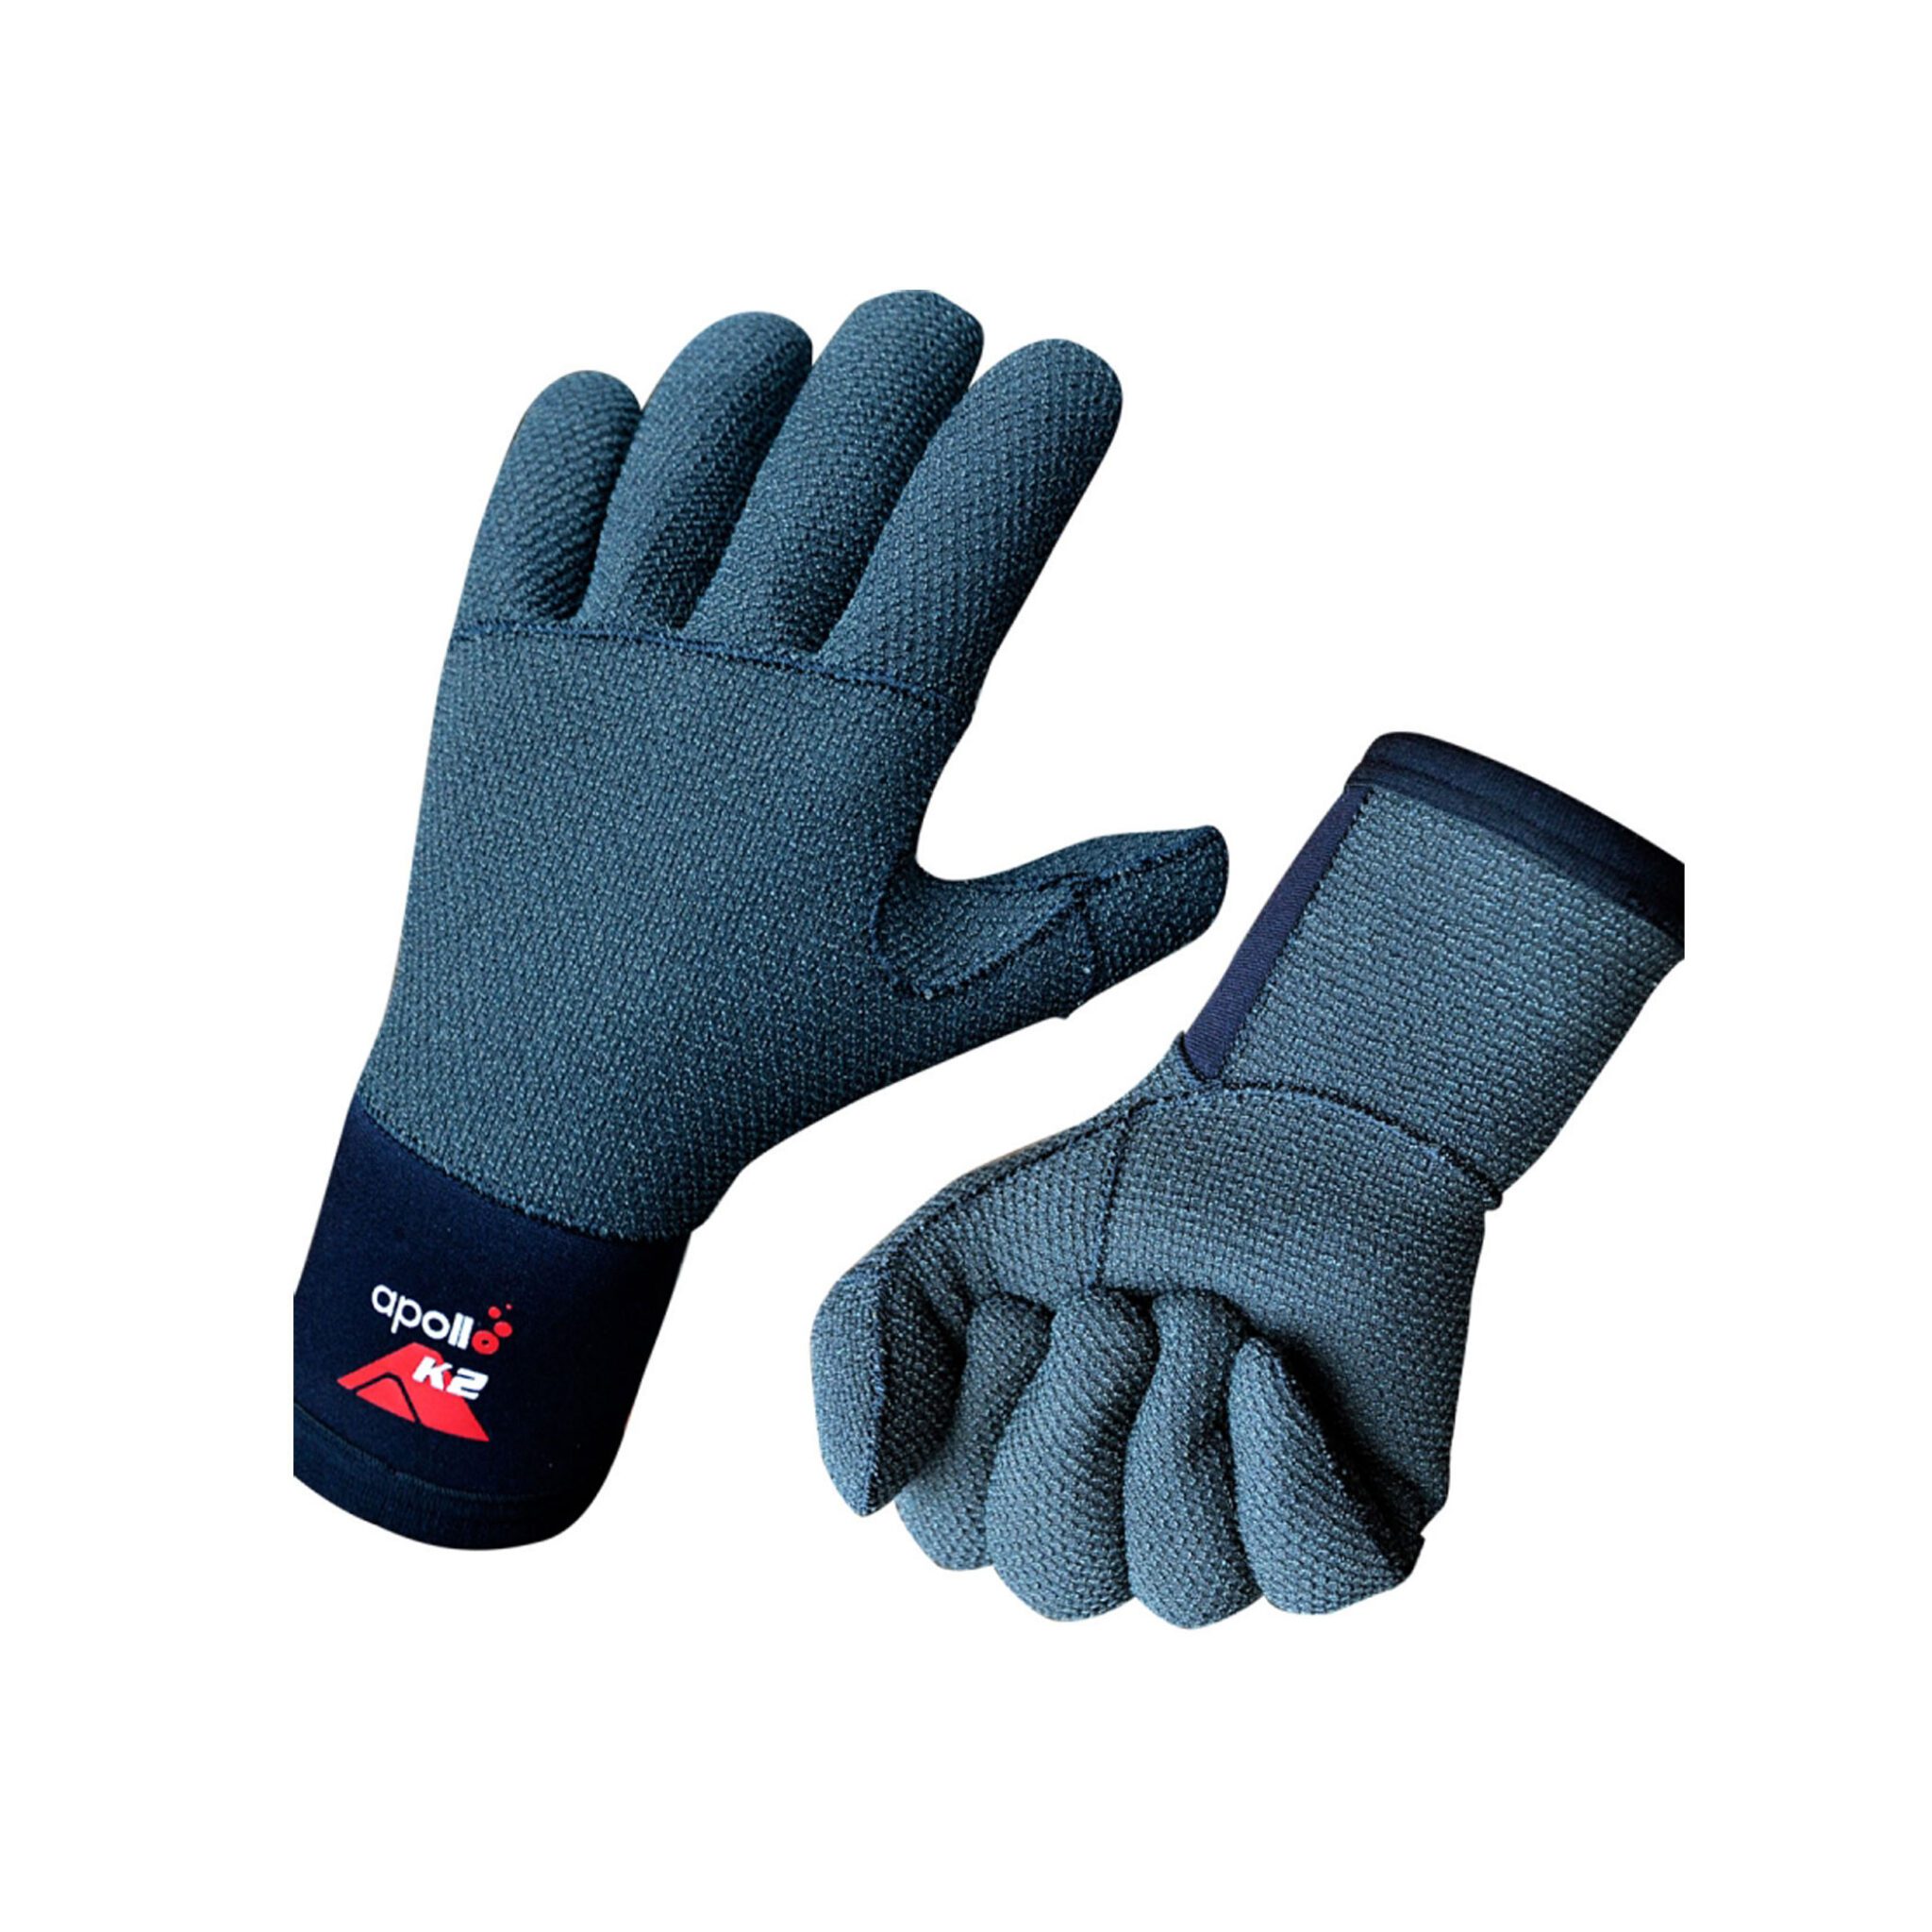 Apollo Kevlar Glove - Commercial Grade